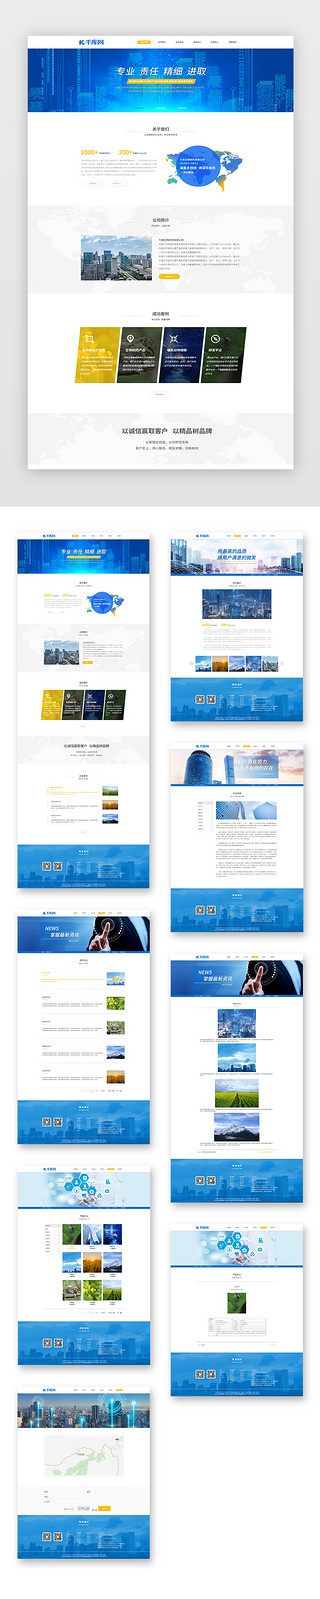 蓝色通用UI设计素材_蓝色通用简约生物药物研究企业网站套图